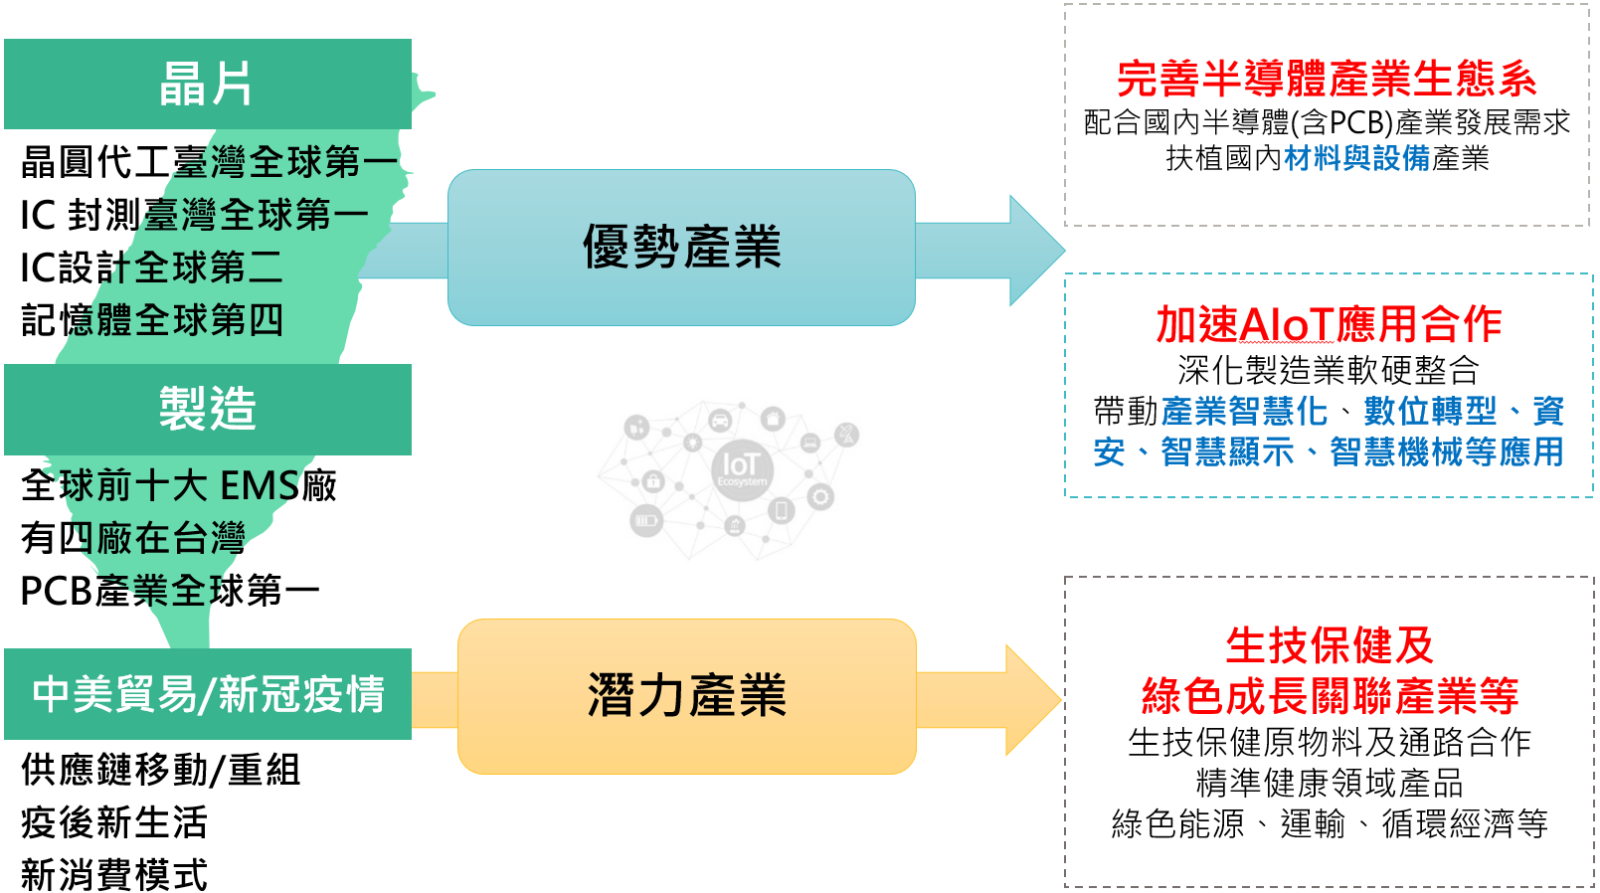 台日合作推動重點示意圖，合作推動台灣優勢產業與潛力產業(如晶片業、製造業)